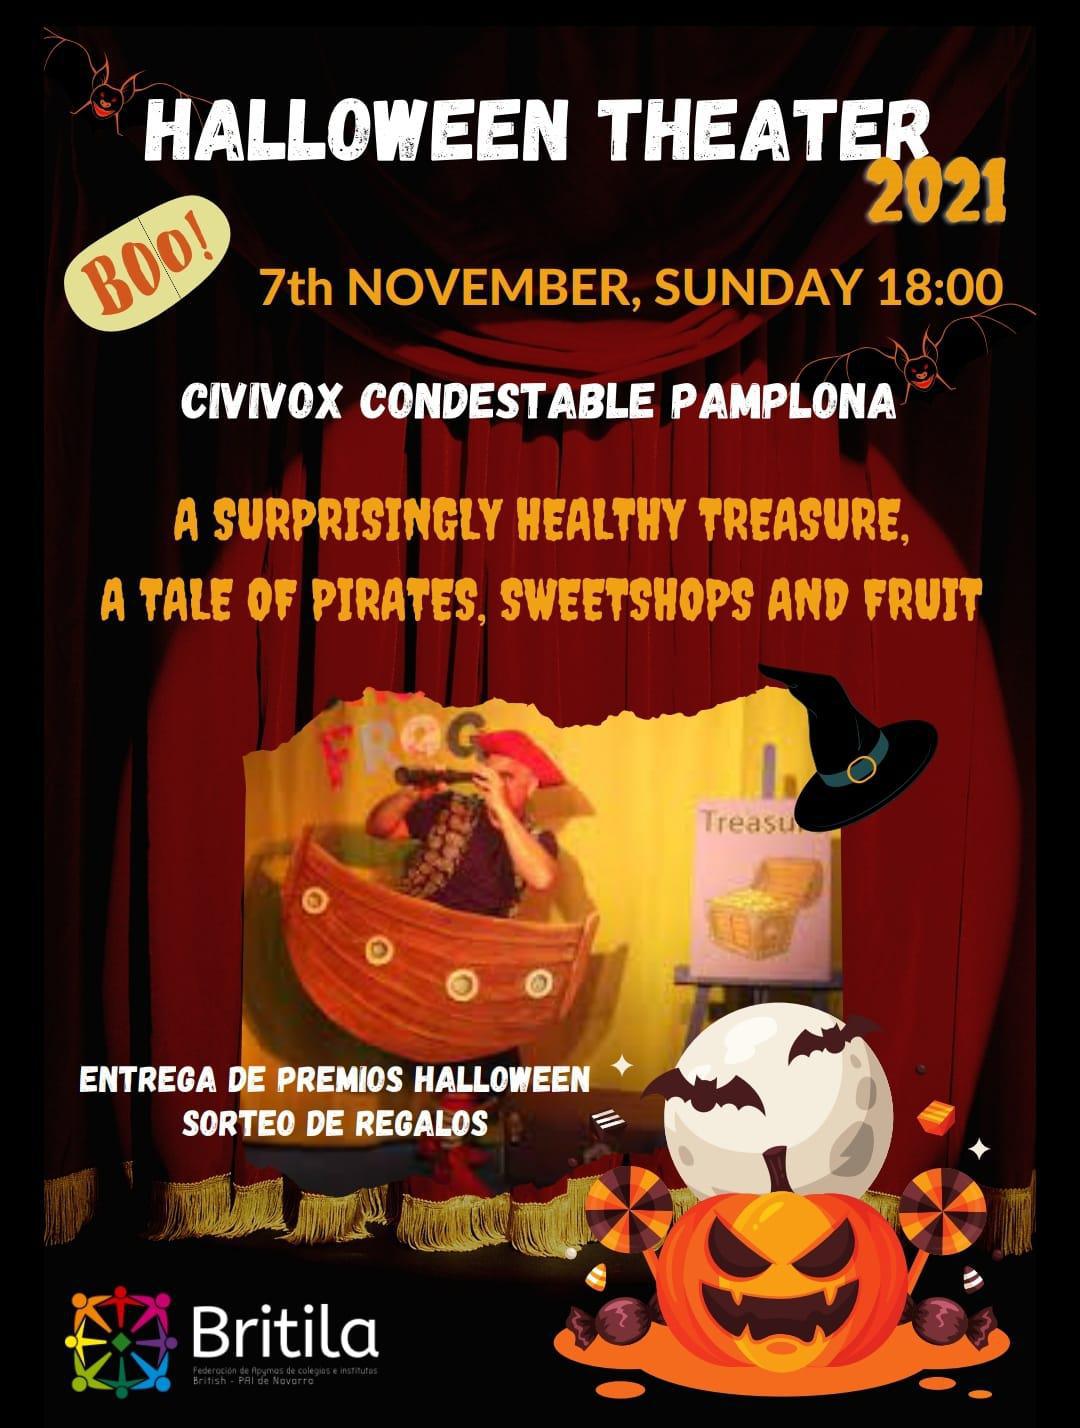 Teatro Halloween el 7 de noviembre en Civivox Condestable